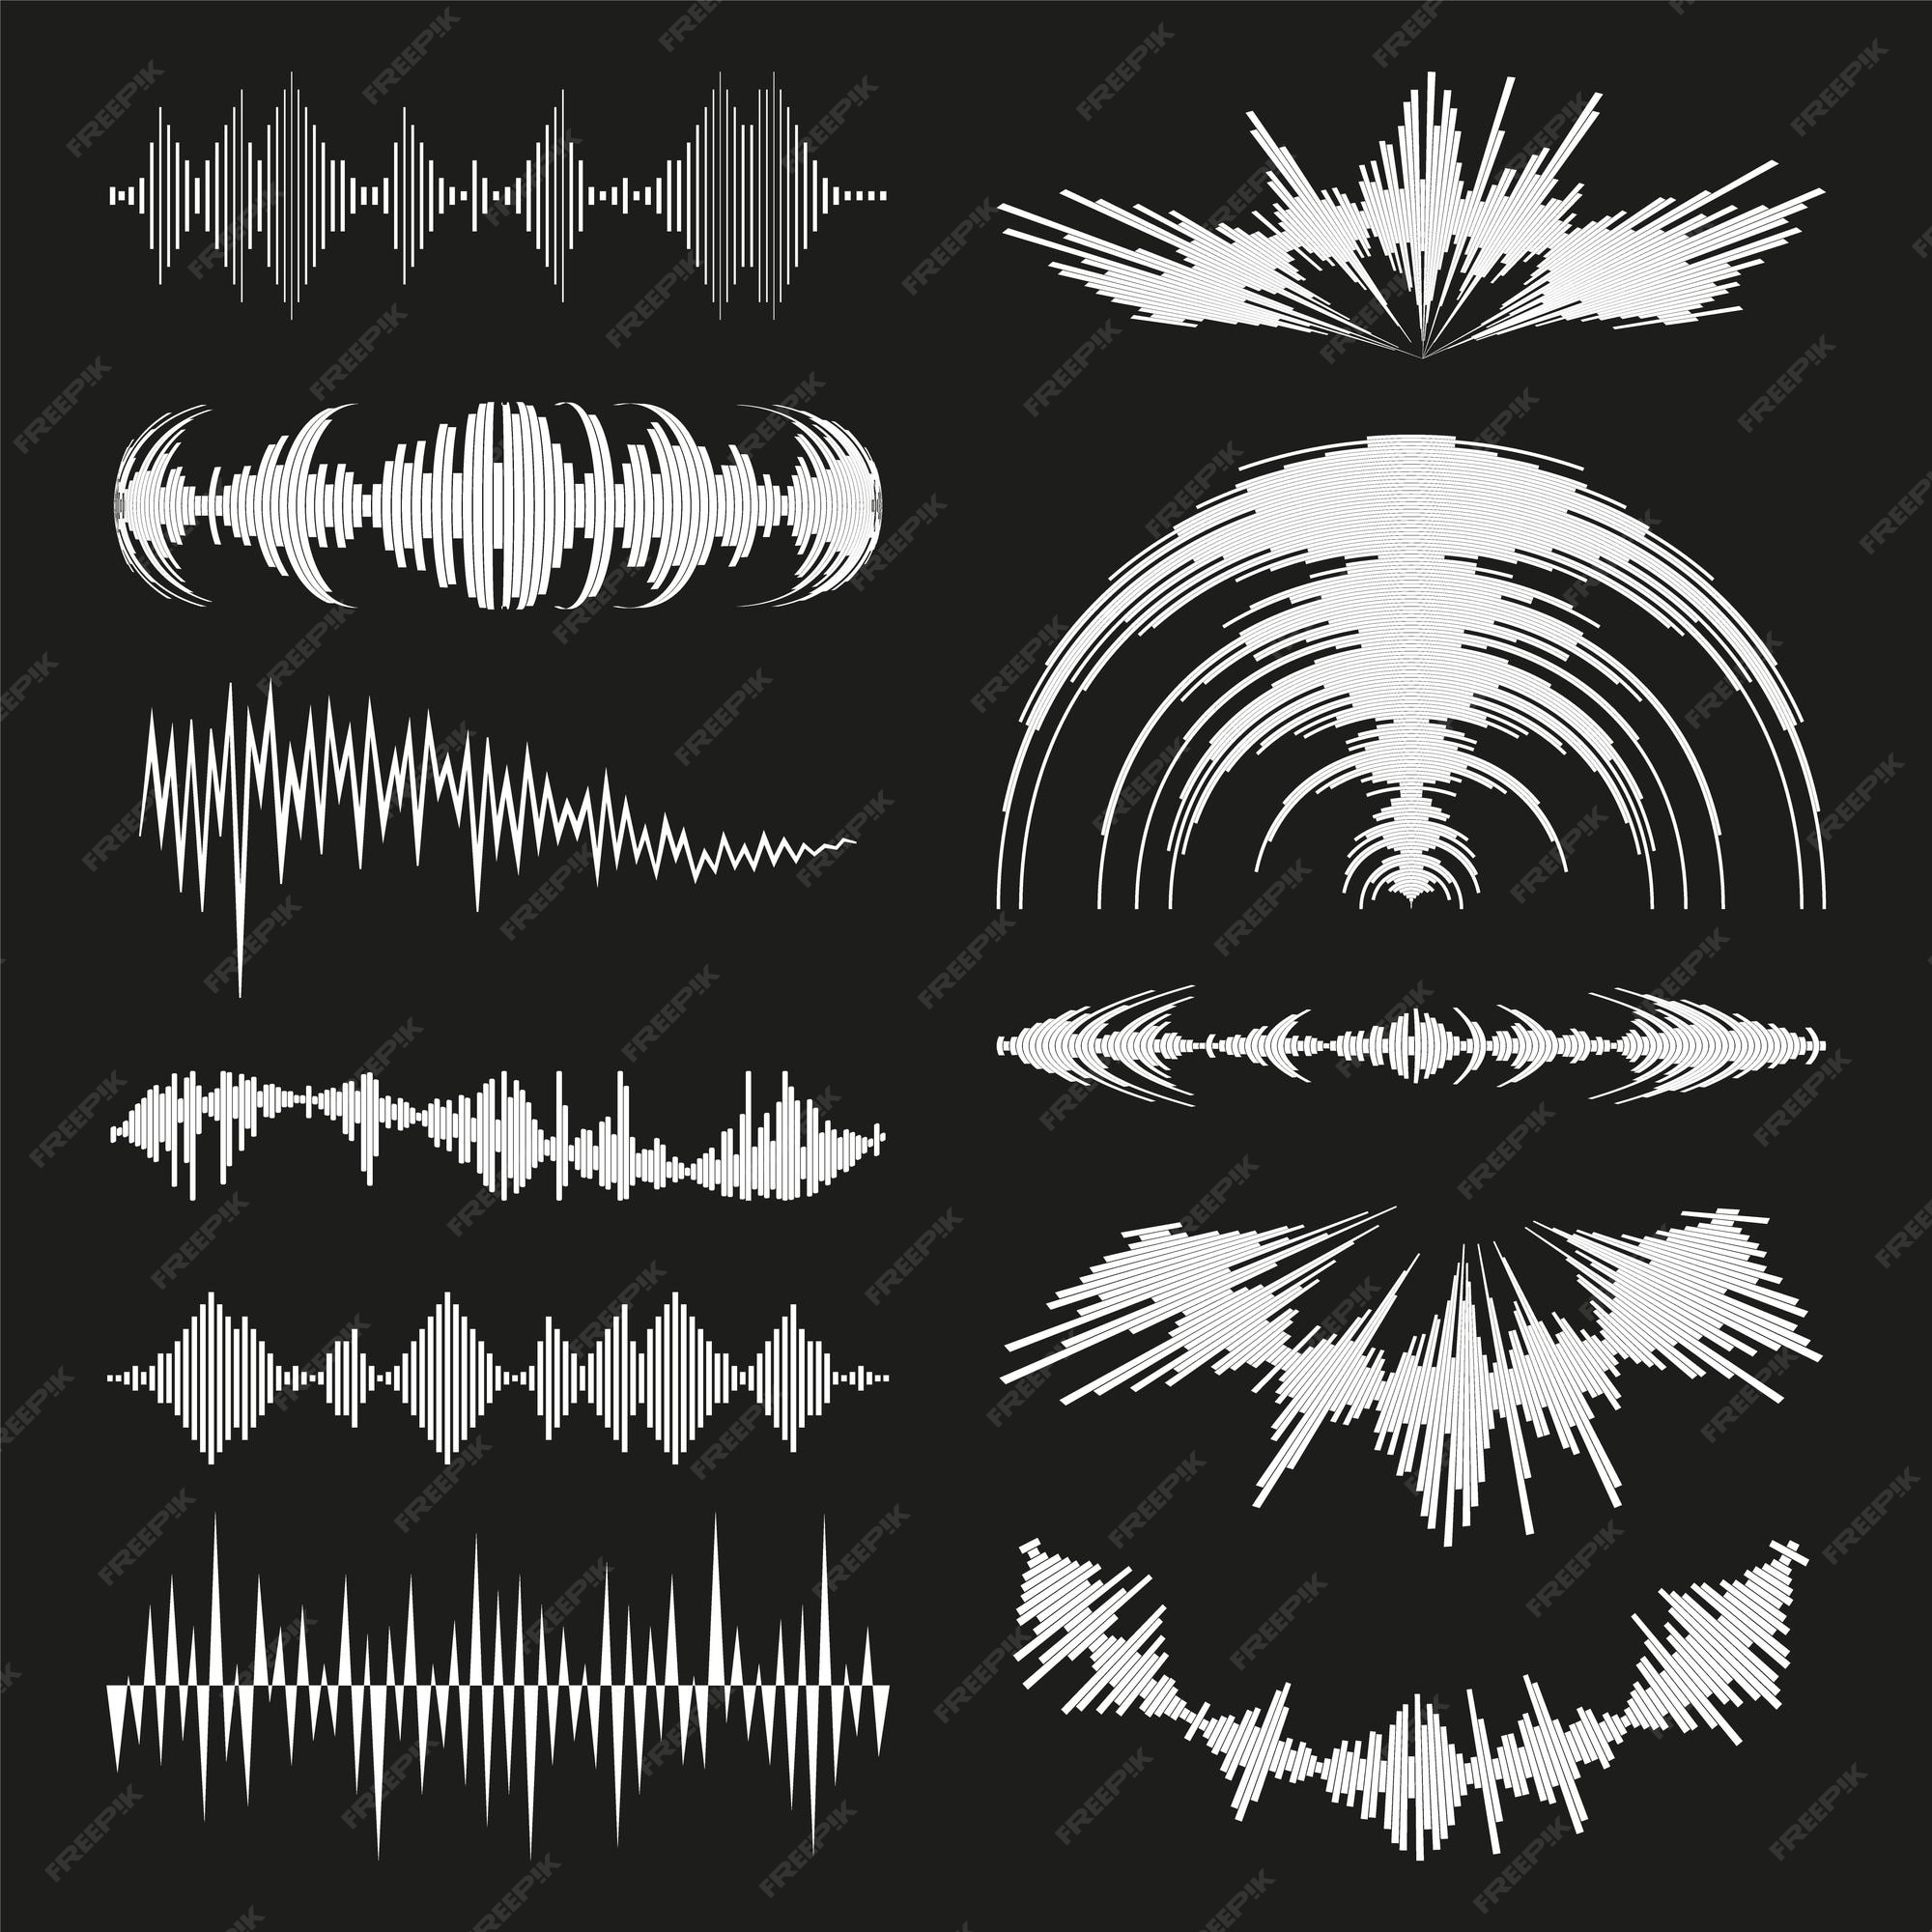 Vector đen trắng logo âm thanh: Bạn đang muốn tìm một hình ảnh âm nhạc độc đáo để tạo điểm nhấn cho thiết kế của mình? Dòng vector đen trắng logo âm thanh này chắc chắn sẽ làm cho bạn thích thú. Sự tinh tế và hiện đại của nó sẽ cung cấp cho bạn một trải nghiệm độc đáo và thú vị.